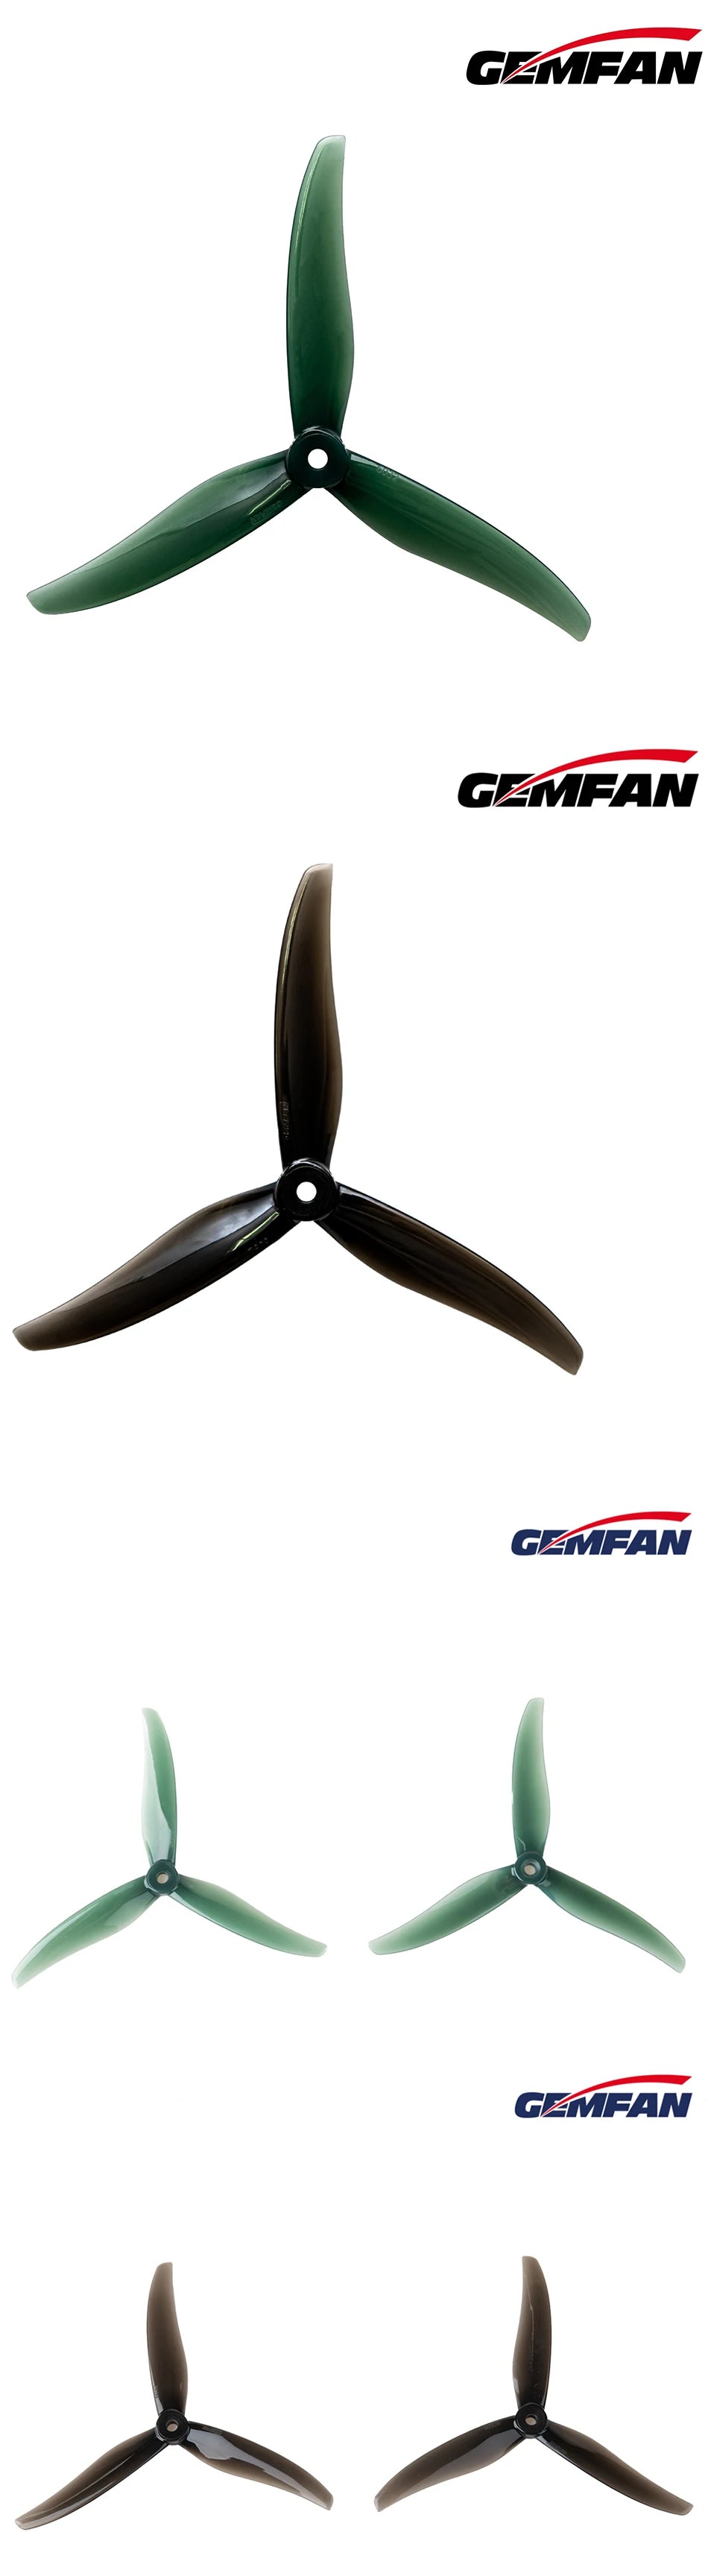 GEMFAN Freestyle 6032 6X3.2X3 3-Blade Propeller 